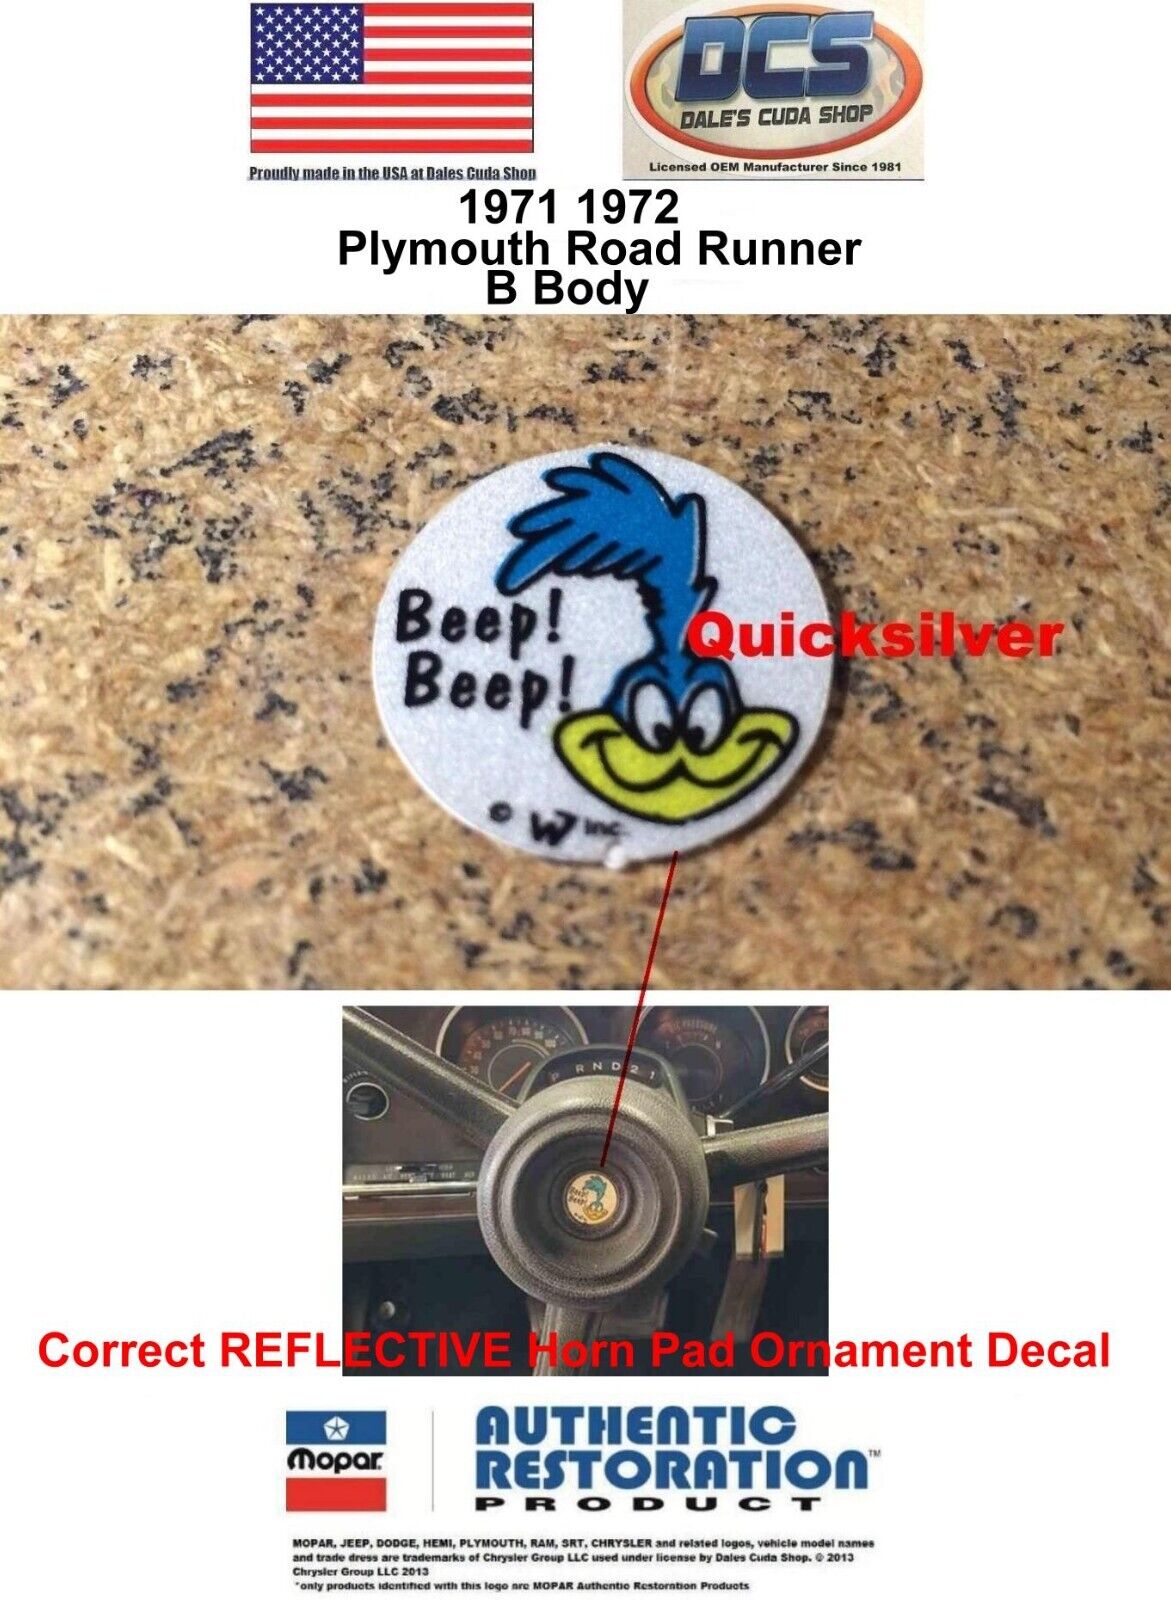 1971 1972 Plymouth Road Runner Horn Button Ornament Bird Decal NEW MoPar USA